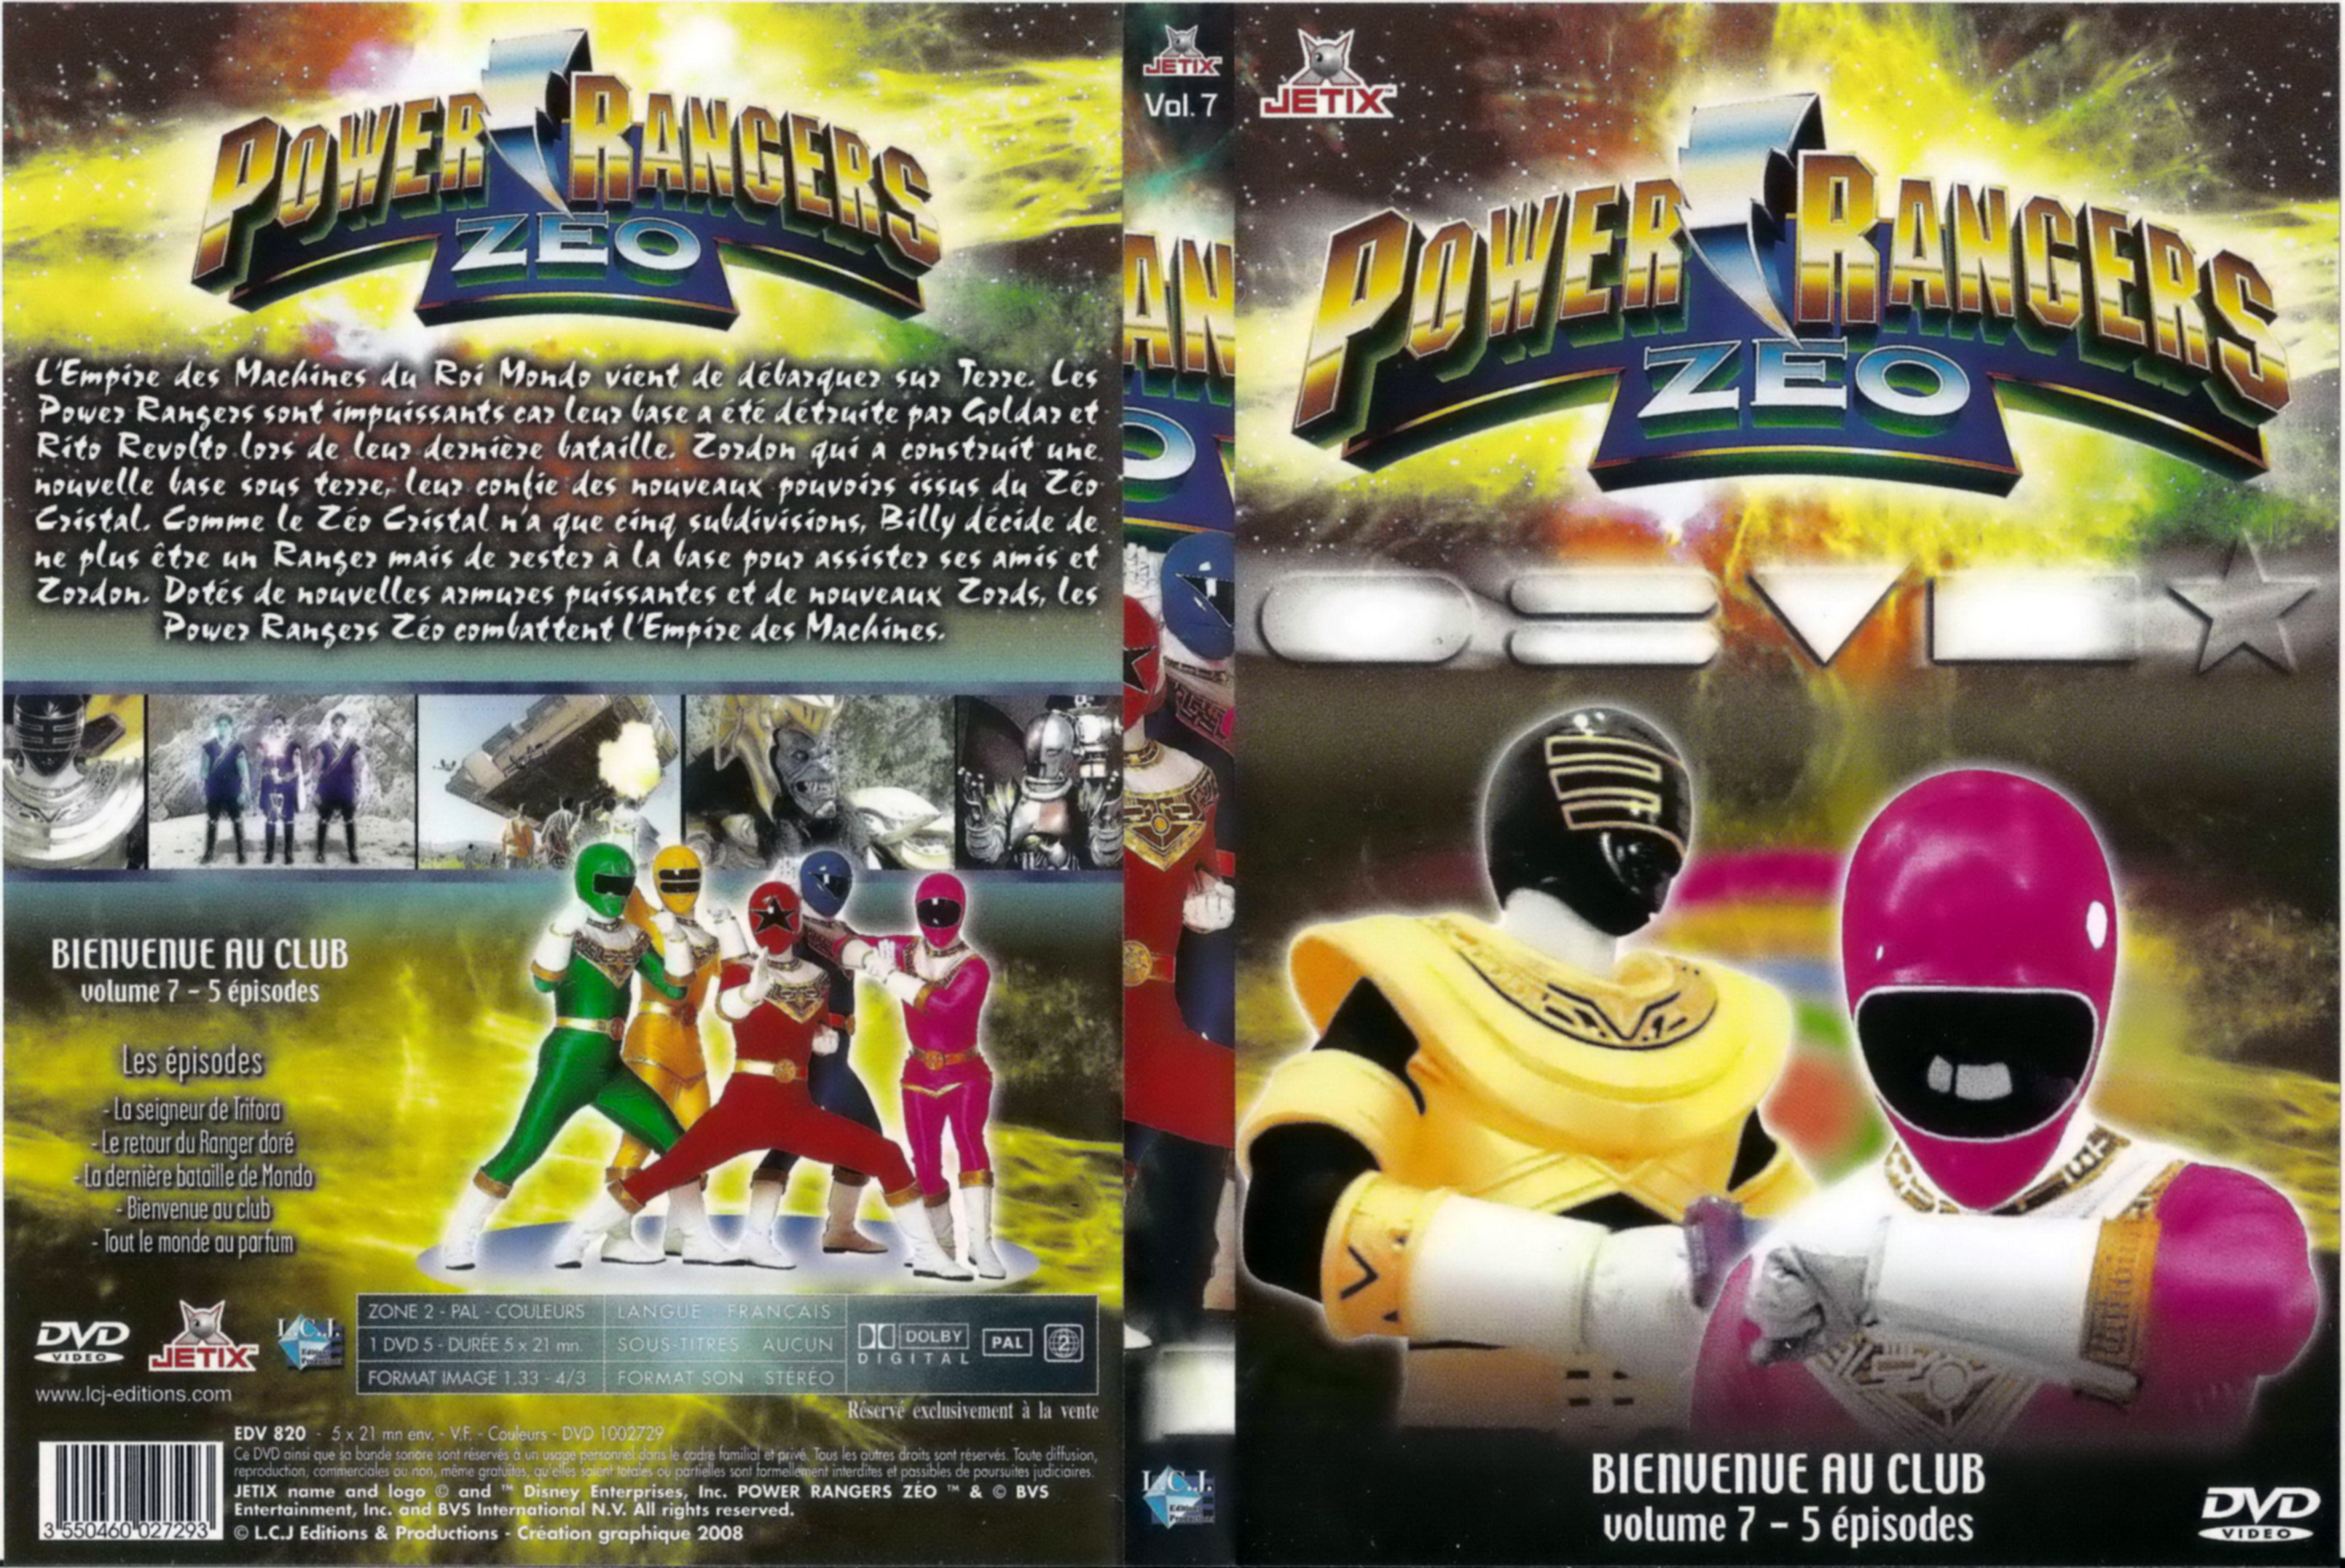 Jaquette DVD Power rangers zeo vol 7